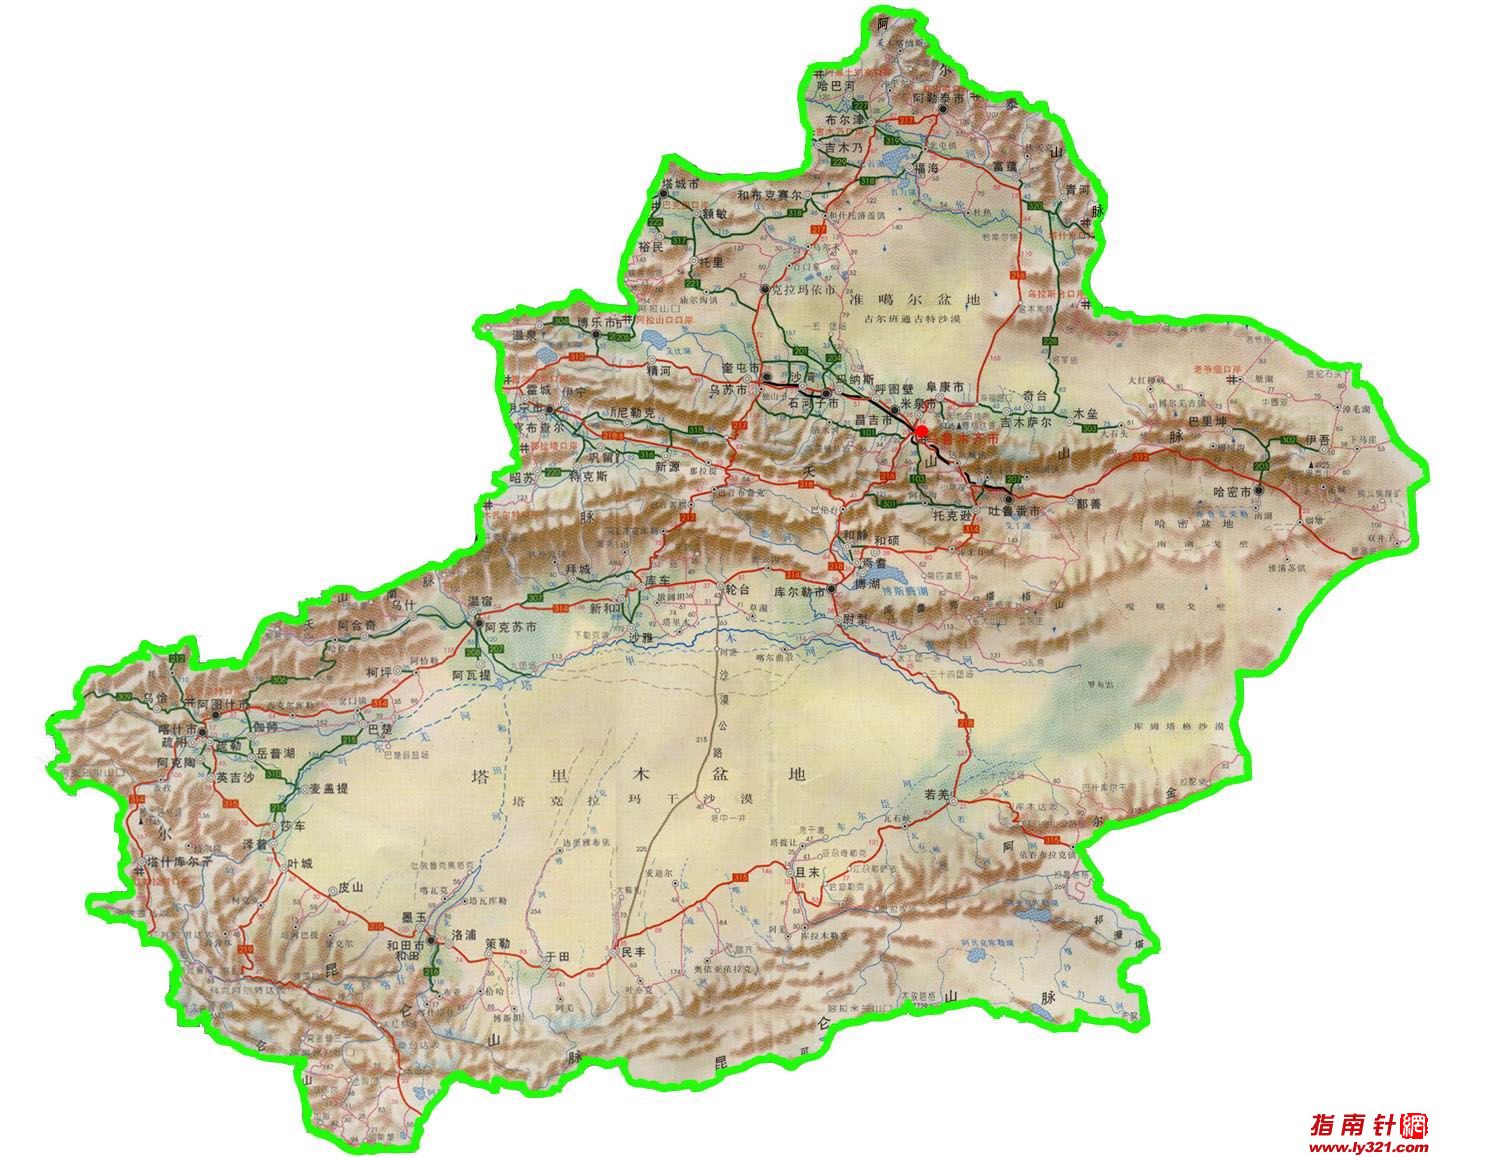 新疆三山夹两盆说的是新疆地形特点:地形特徵是山脉与盆地相间排列